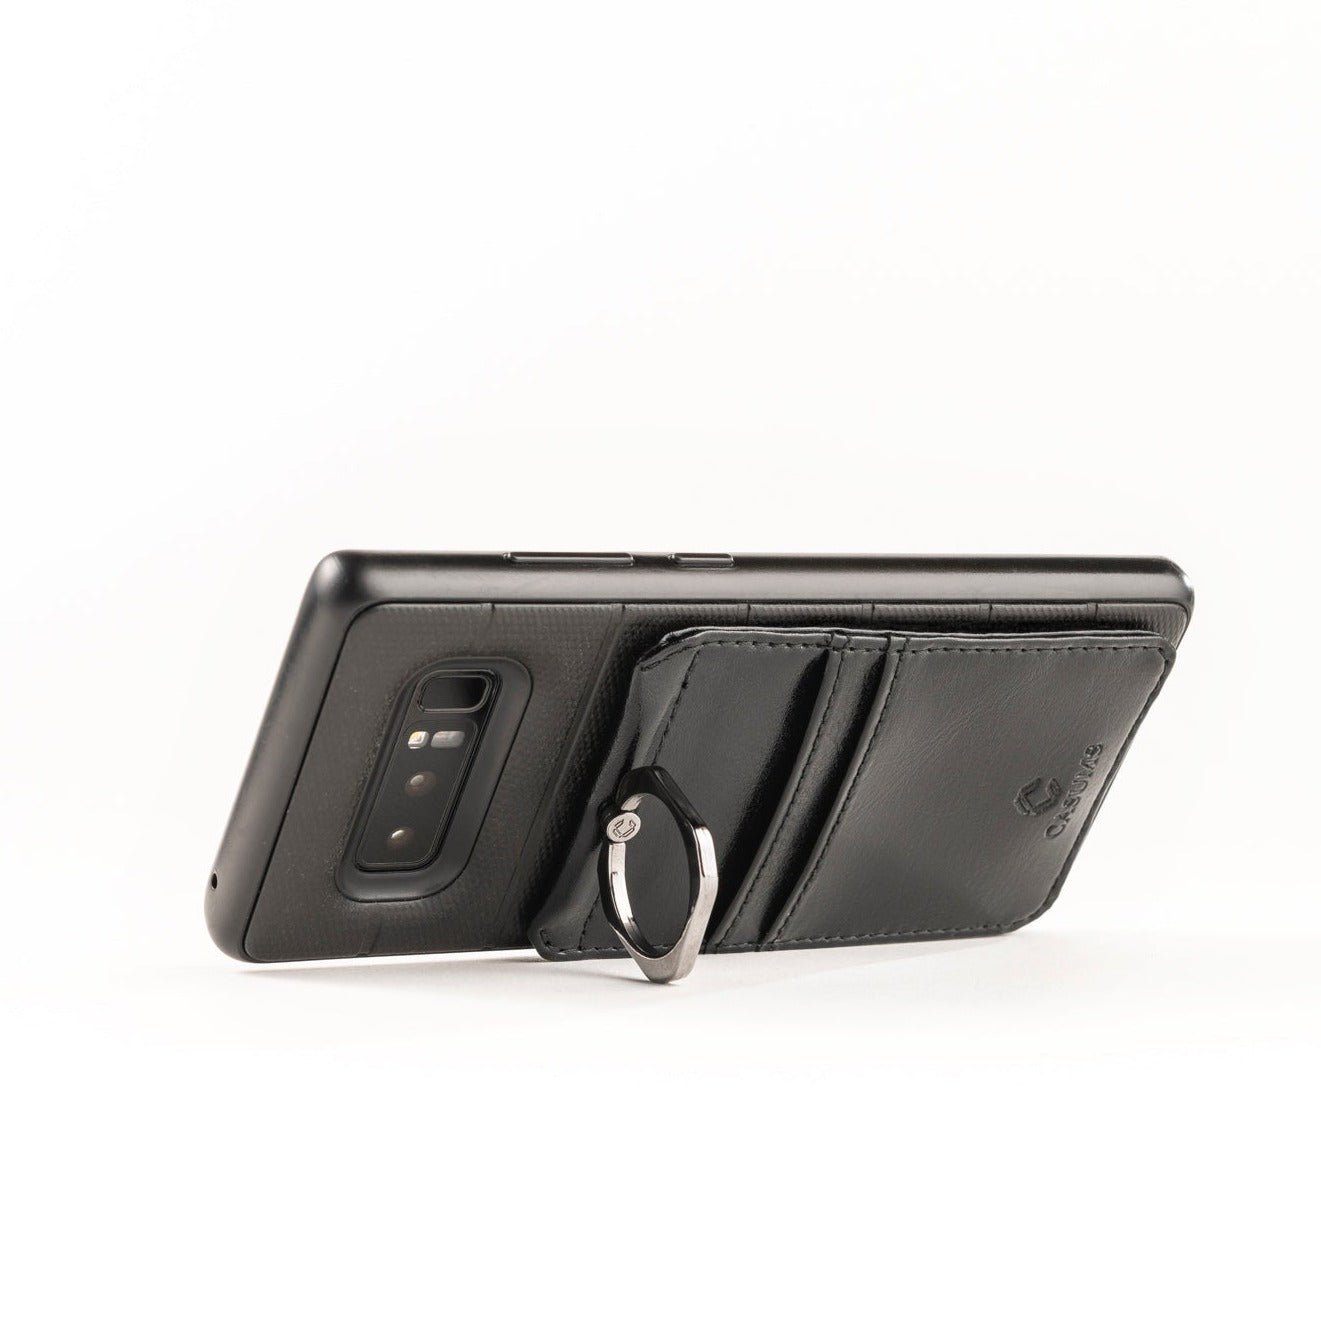 Phone Lanyard Wallet - Onyx (black) - Gunmetal Toned Hardware